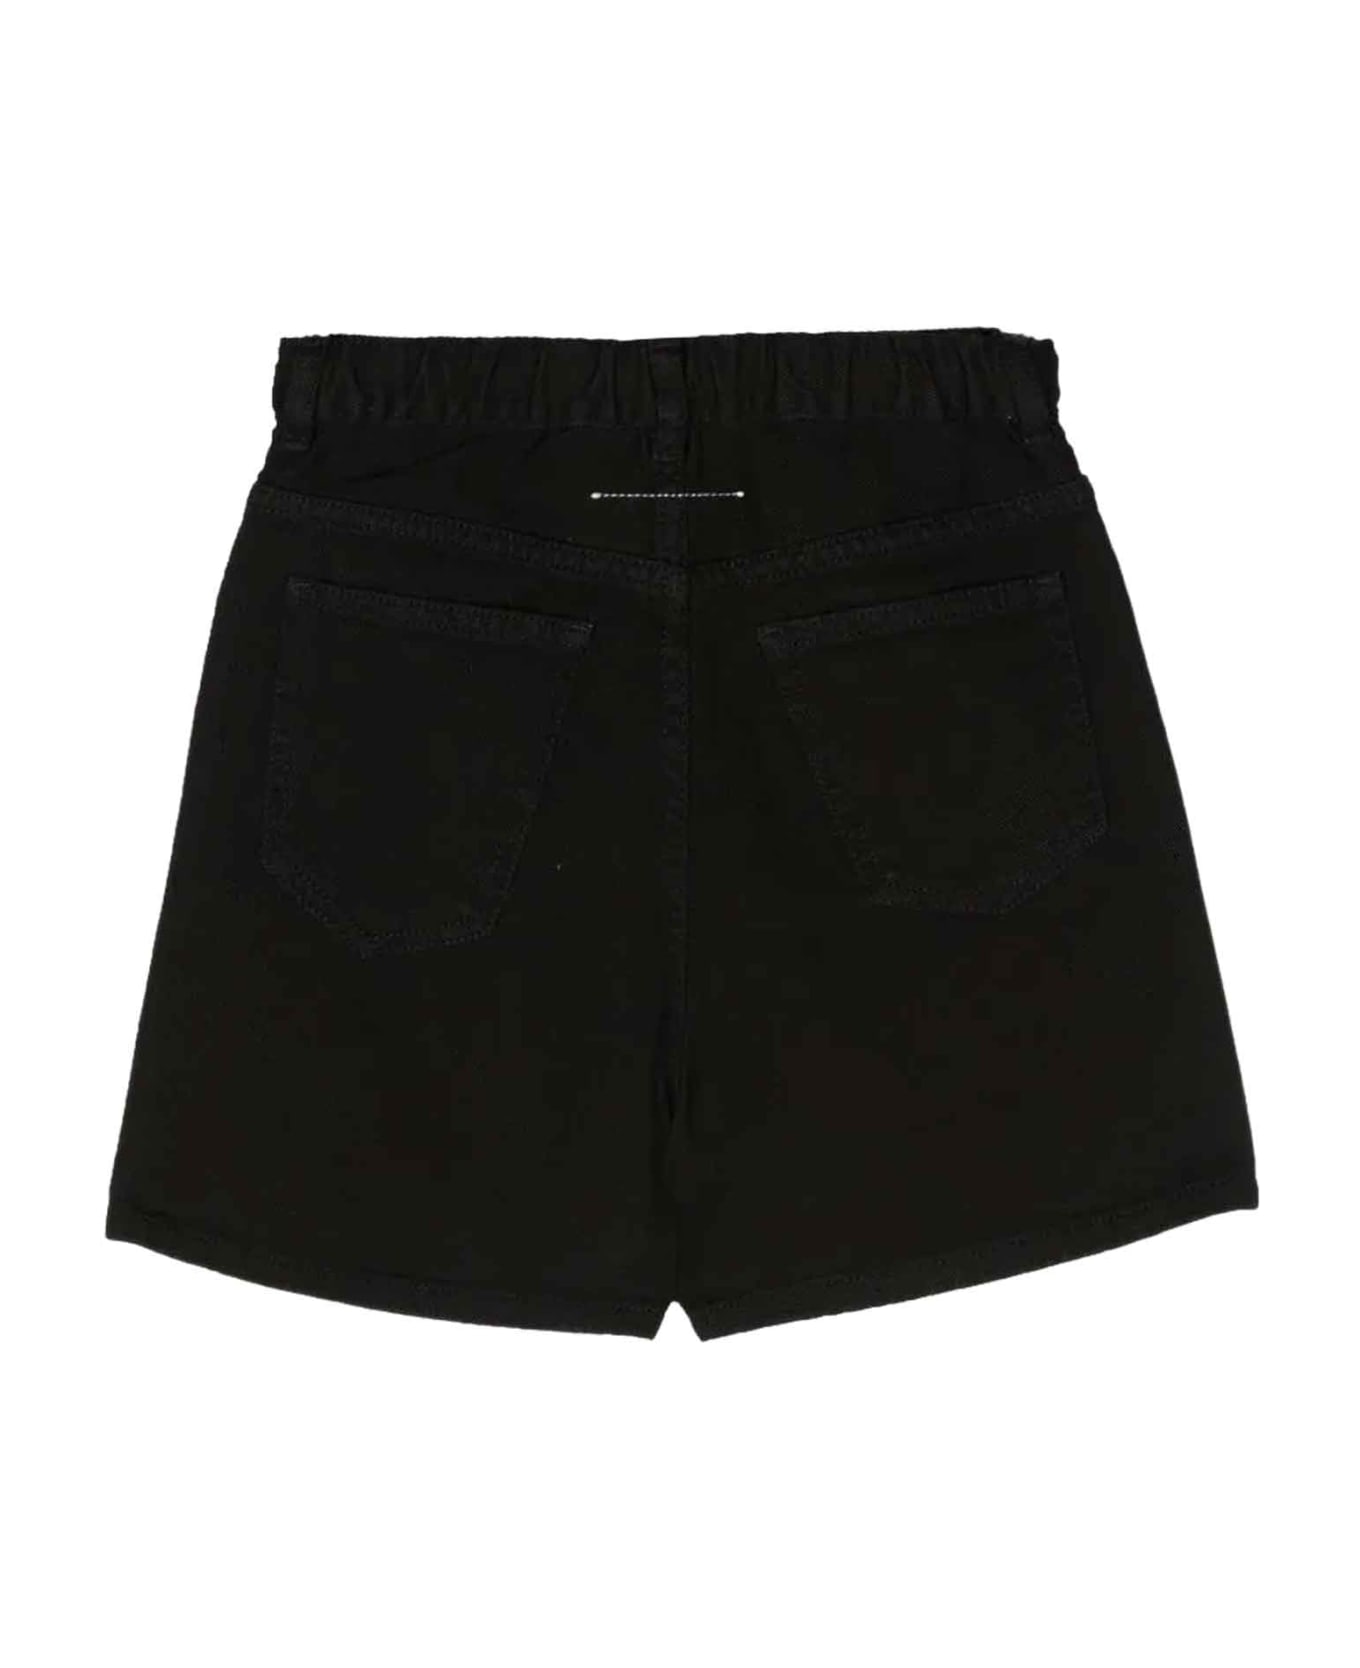 MM6 Maison Margiela Black Shorts Unisex - Nero